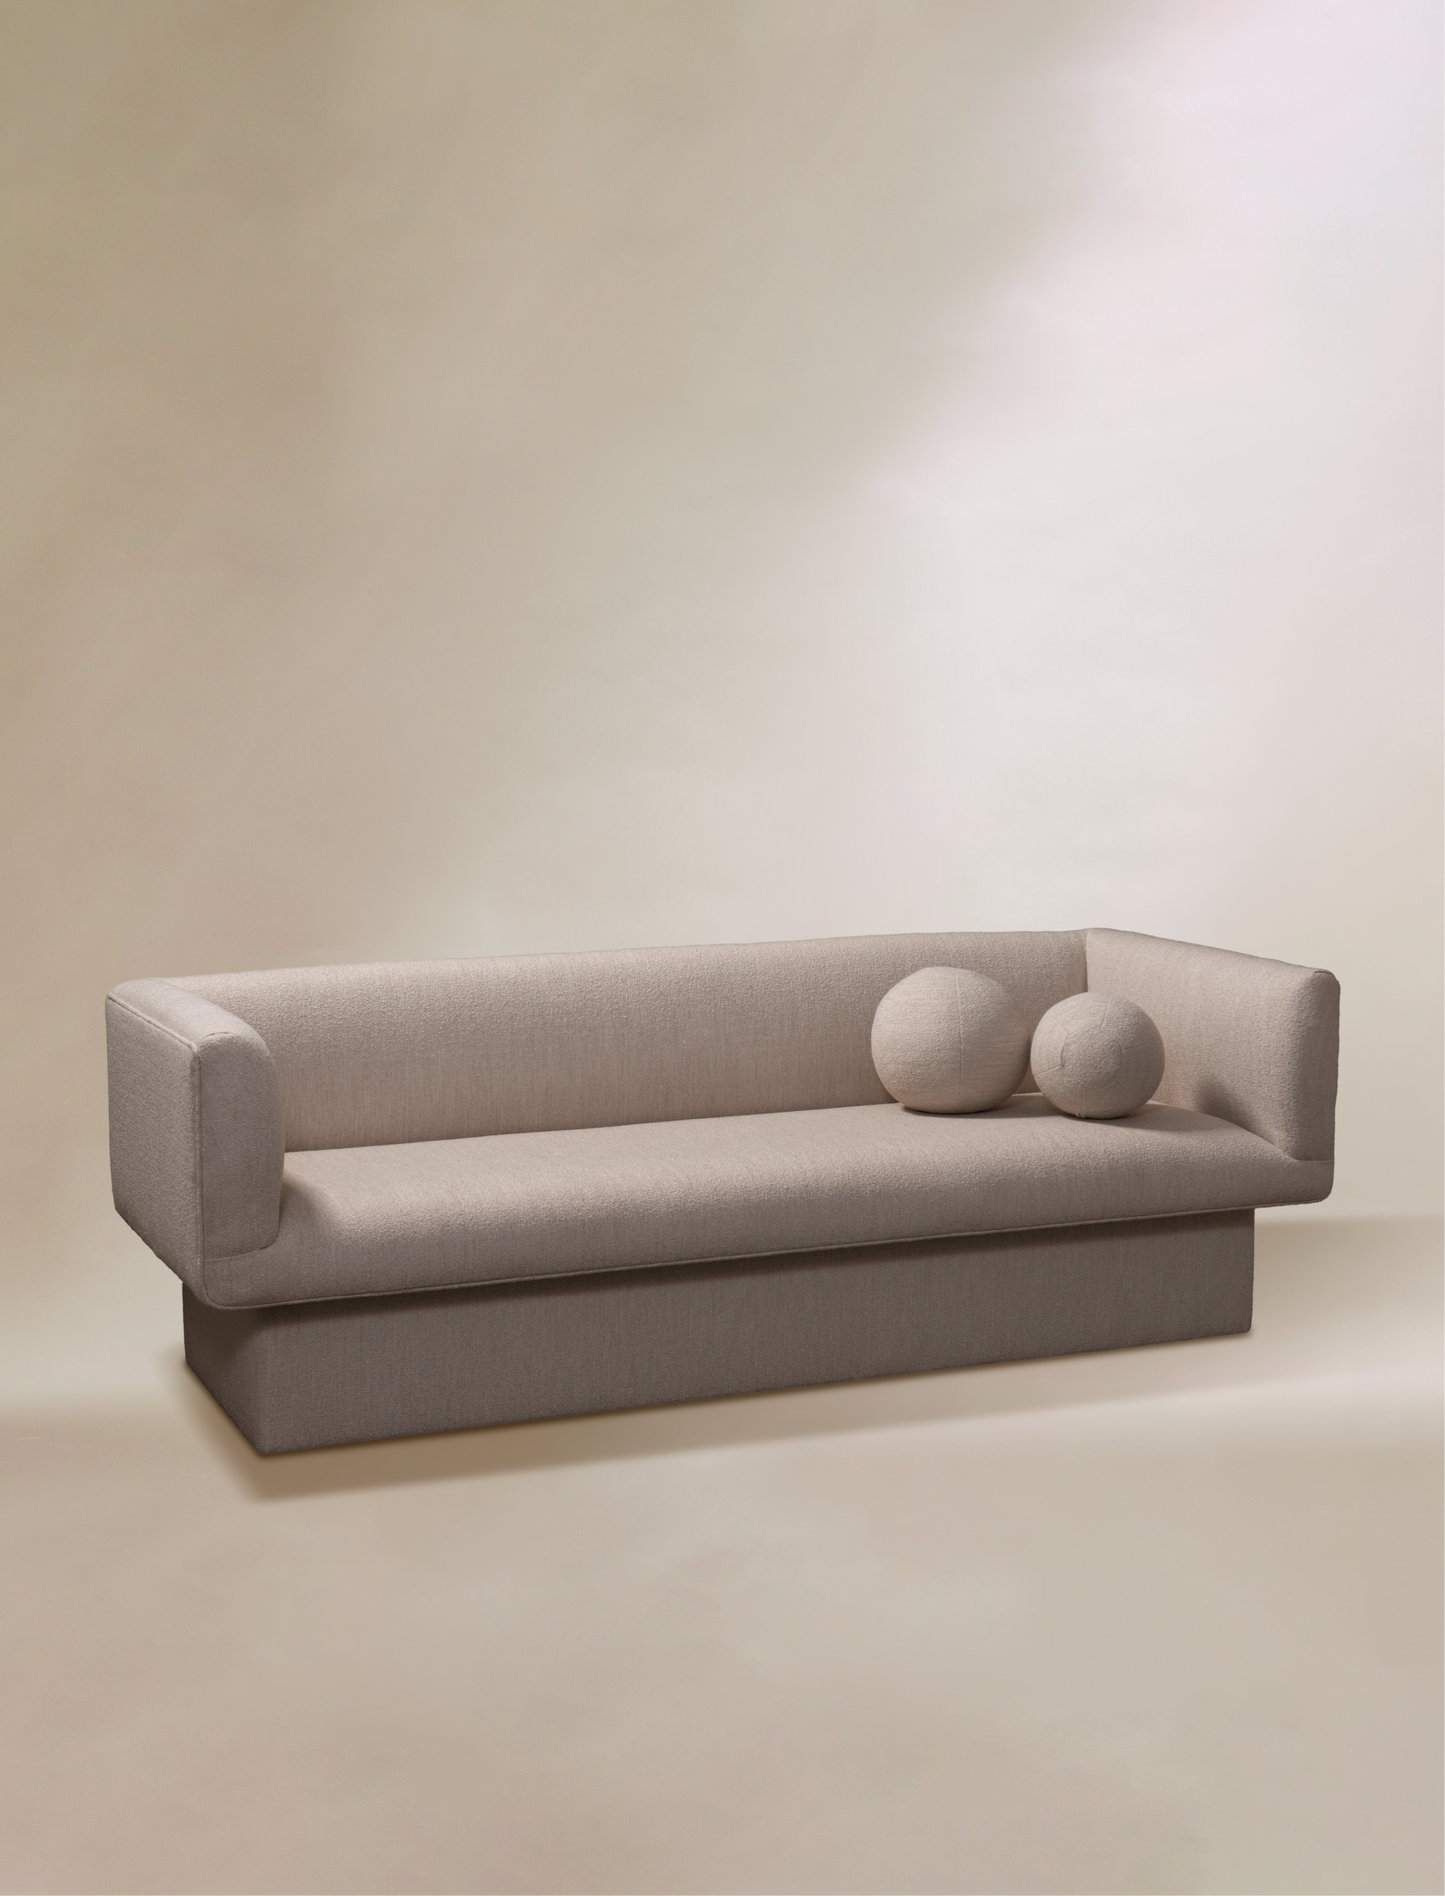 The BALANCE sofa